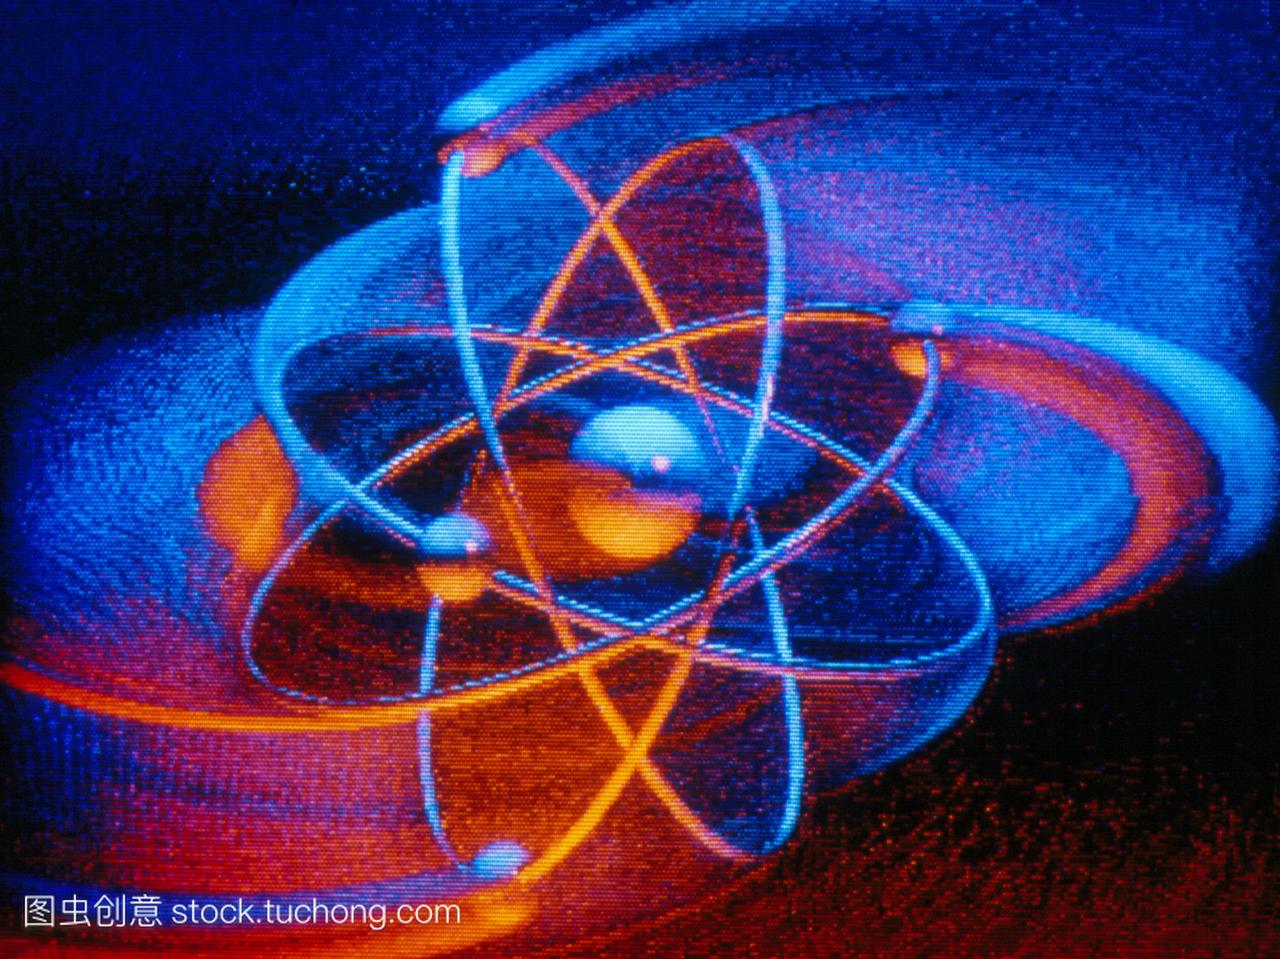 铍原子。计算机数字化的一种铍原子的图解。这